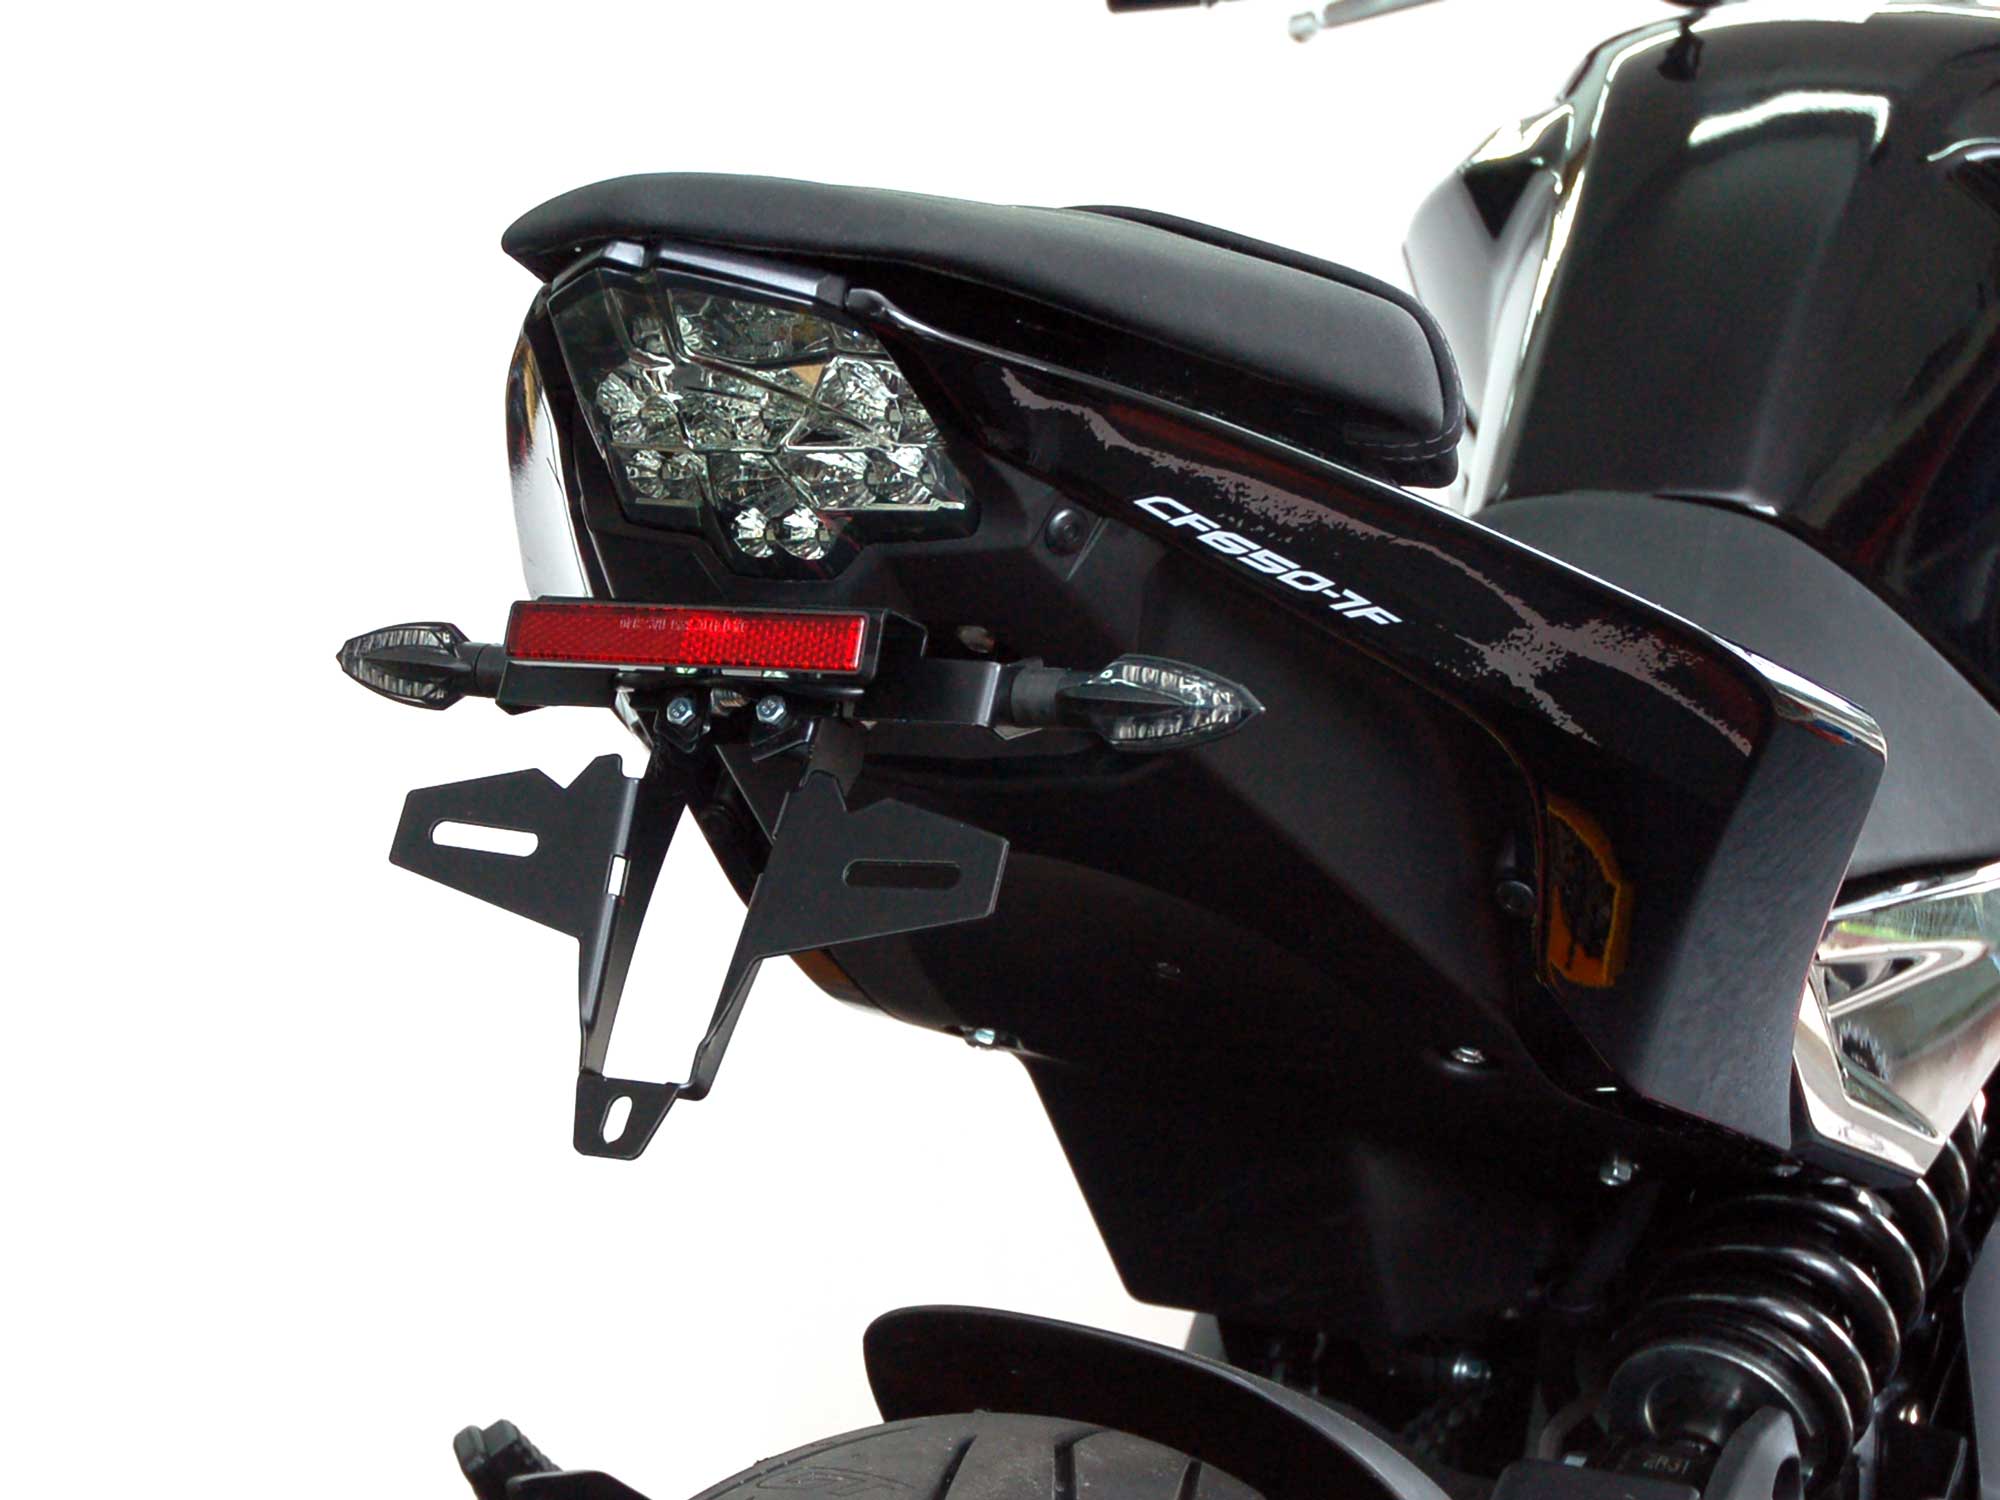 Kit de support de plaque d'immatriculation réglable Lightech spécifique  pour CF Moto 650 NK (2021-22) Vente en Ligne 